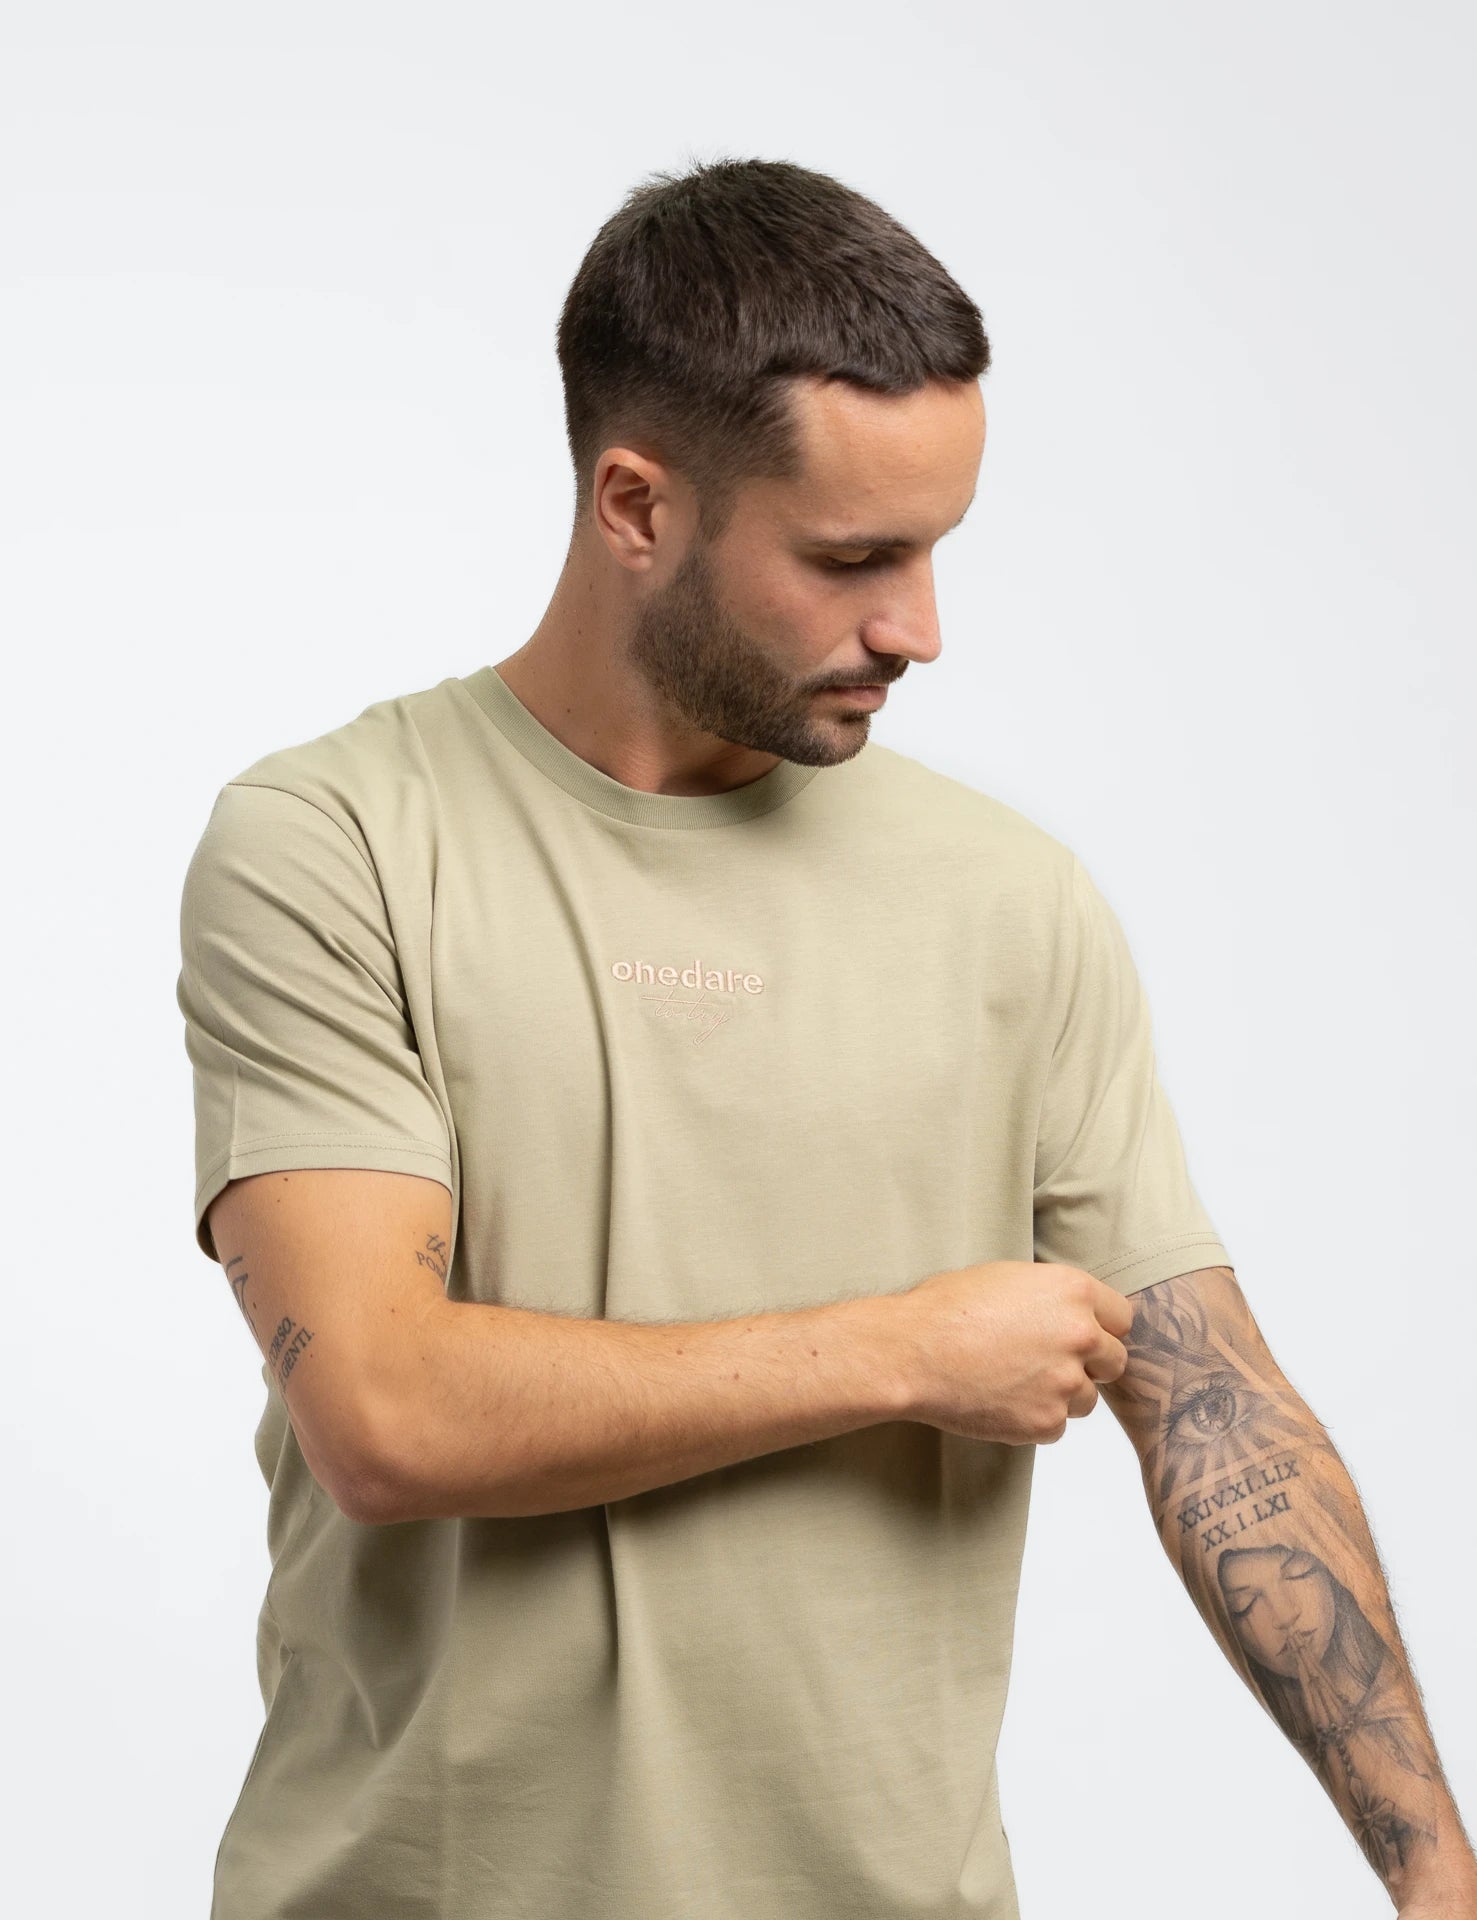 Lightgreen classic Bio-Baumwolle T-Shirt mit beigen, onedare totry Stick mittig auf der Brust.